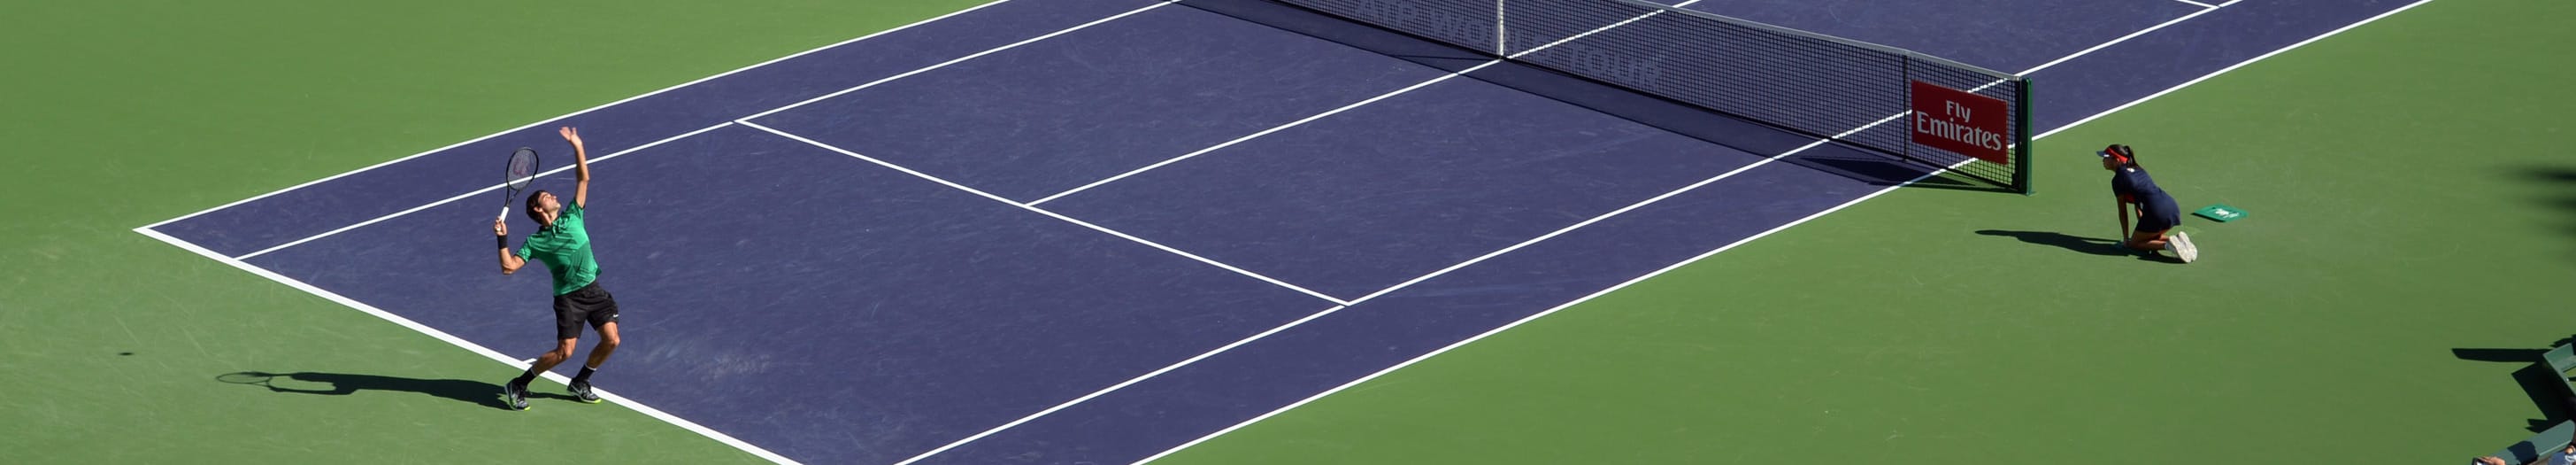 Indian Wells: i consigli per il day 5 con un Federer-Wawrinka imperdibile